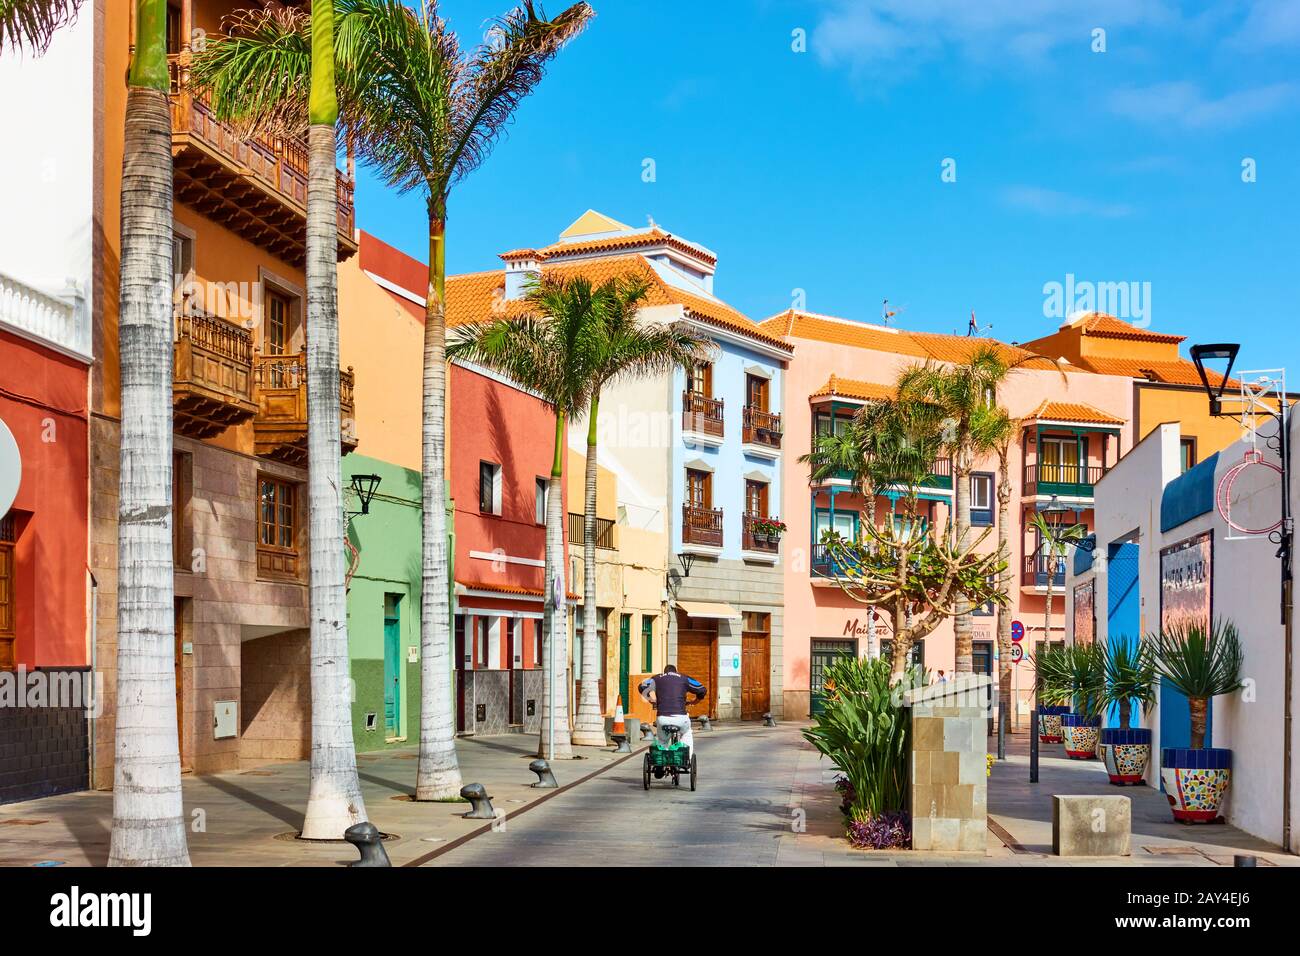 Puerto de la Cruz, Tenerife, Espagne - 13 décembre 2019: Rue dans la vieille ville de Puerto de la Cruz , Les Canaries Banque D'Images